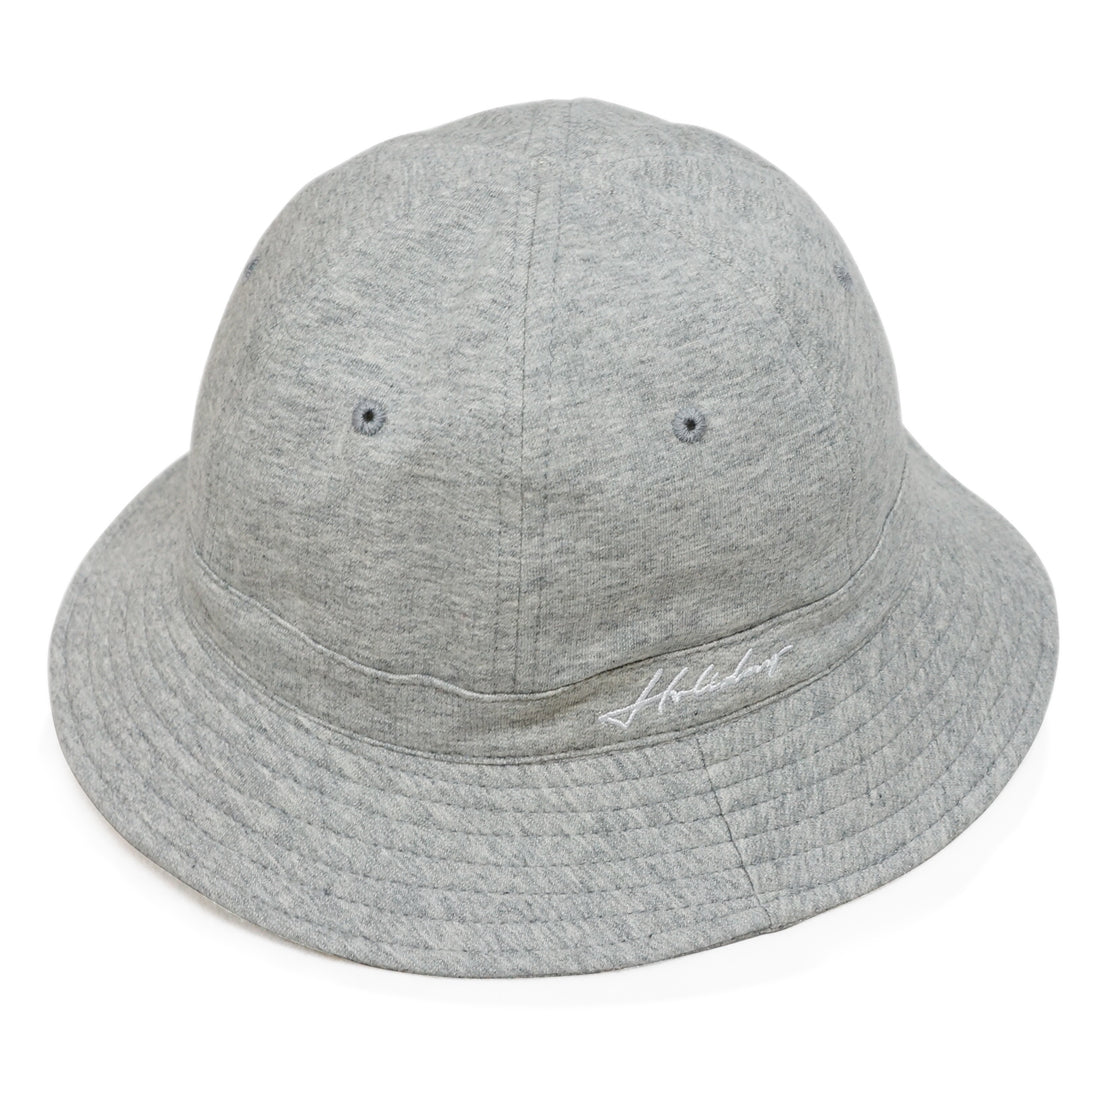 帽子 ハット メンズ レディース HAT ハット スウェット メトロ アウトドア 刺繍 ロゴ キーズ Keys